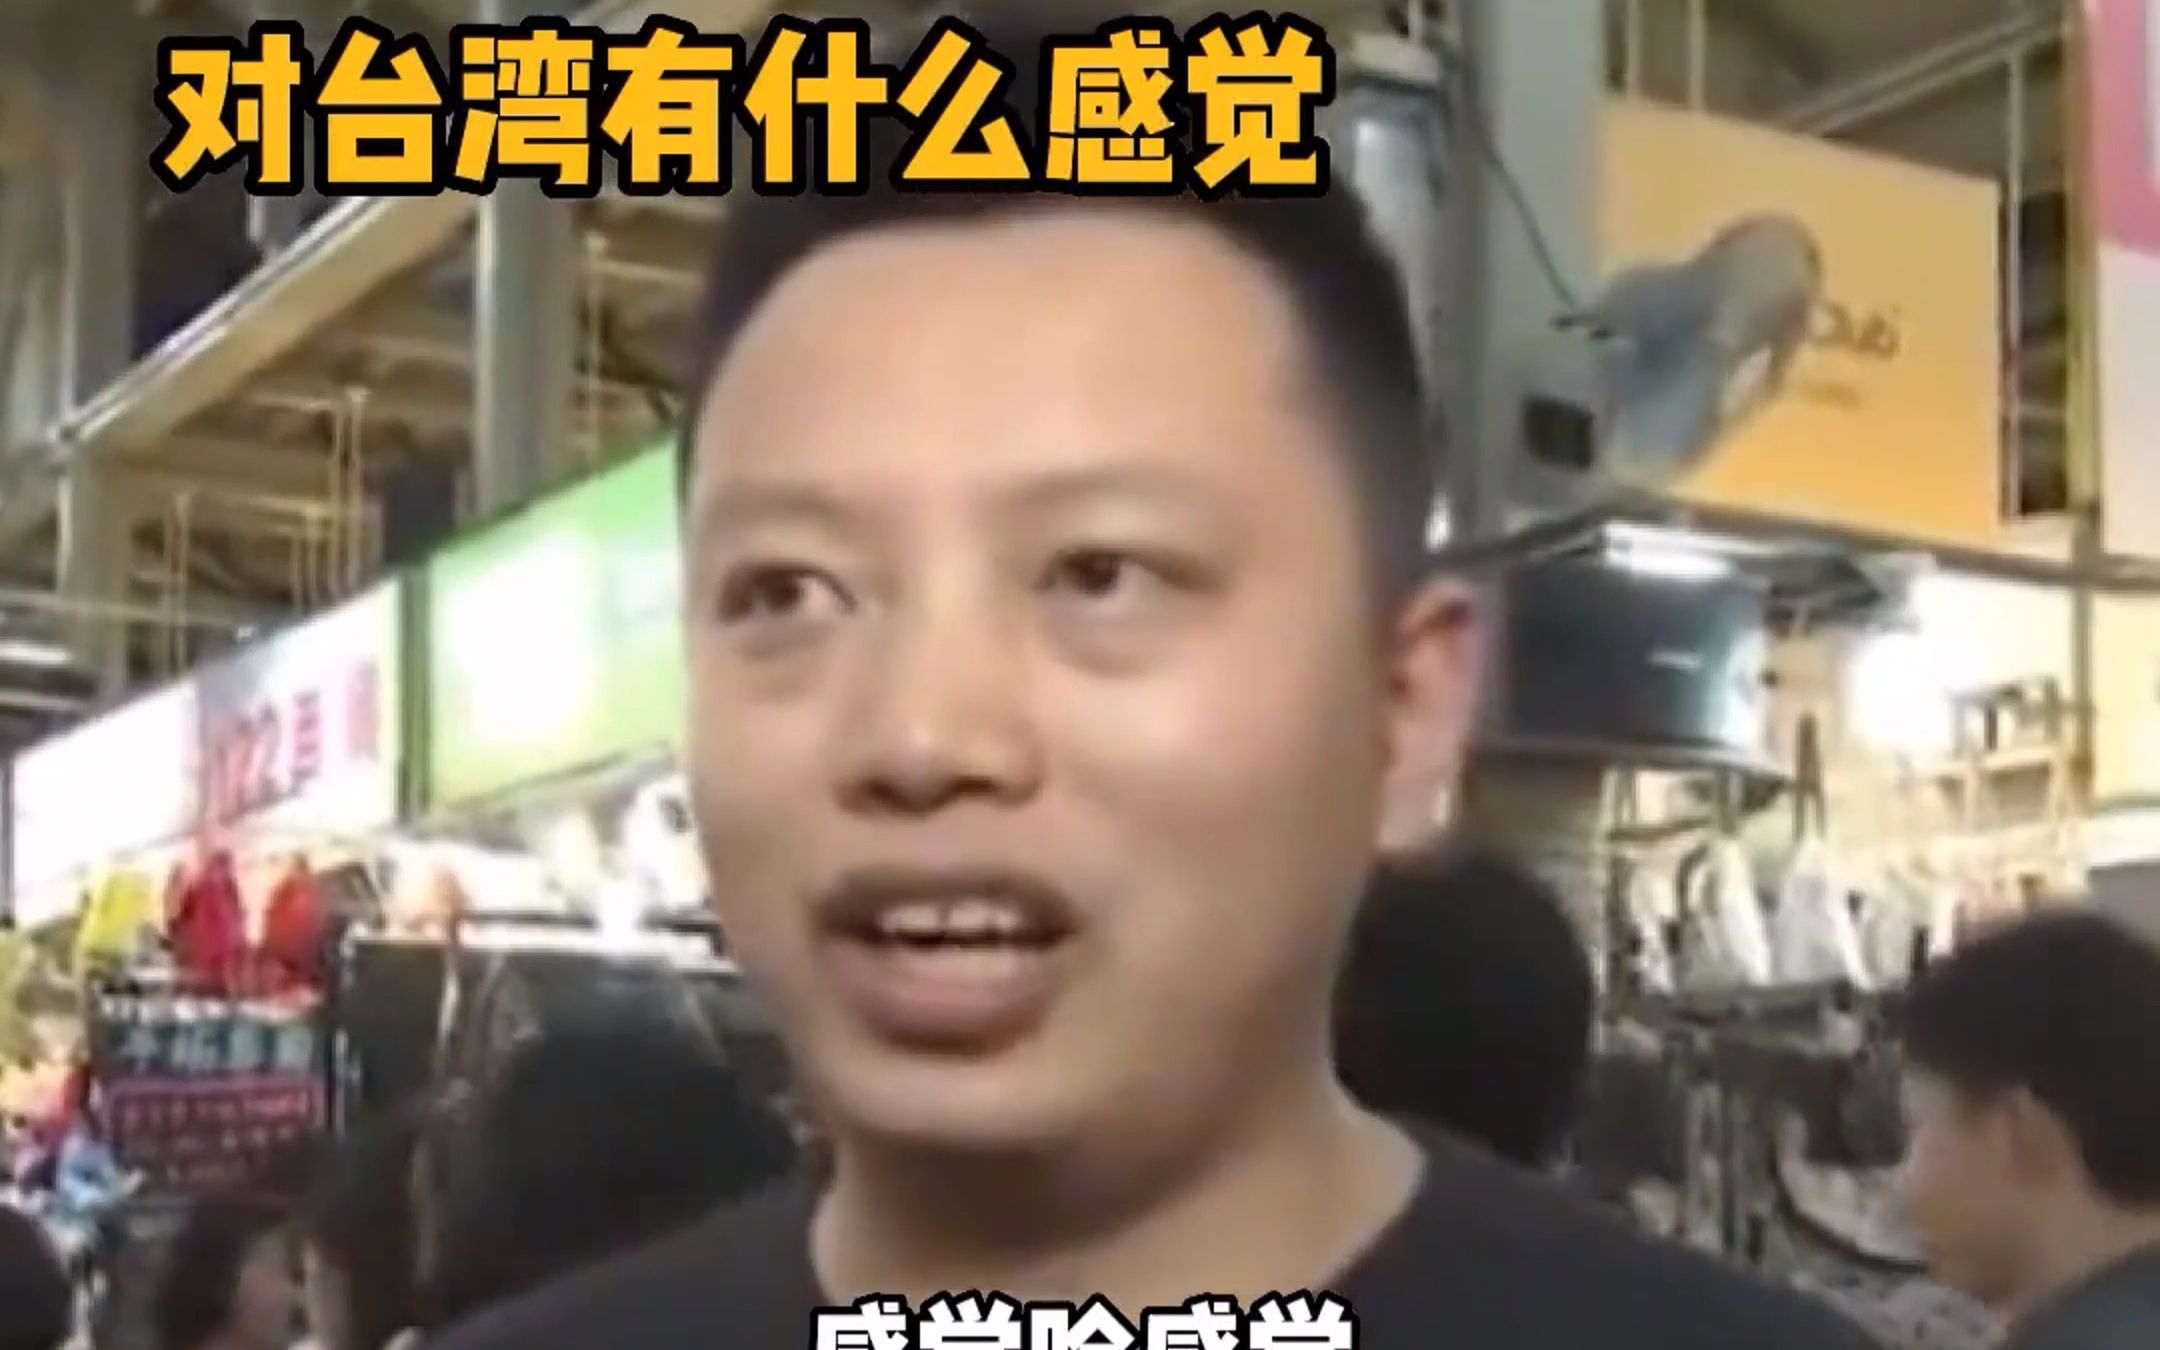 大陆游客在台湾省的神级发言